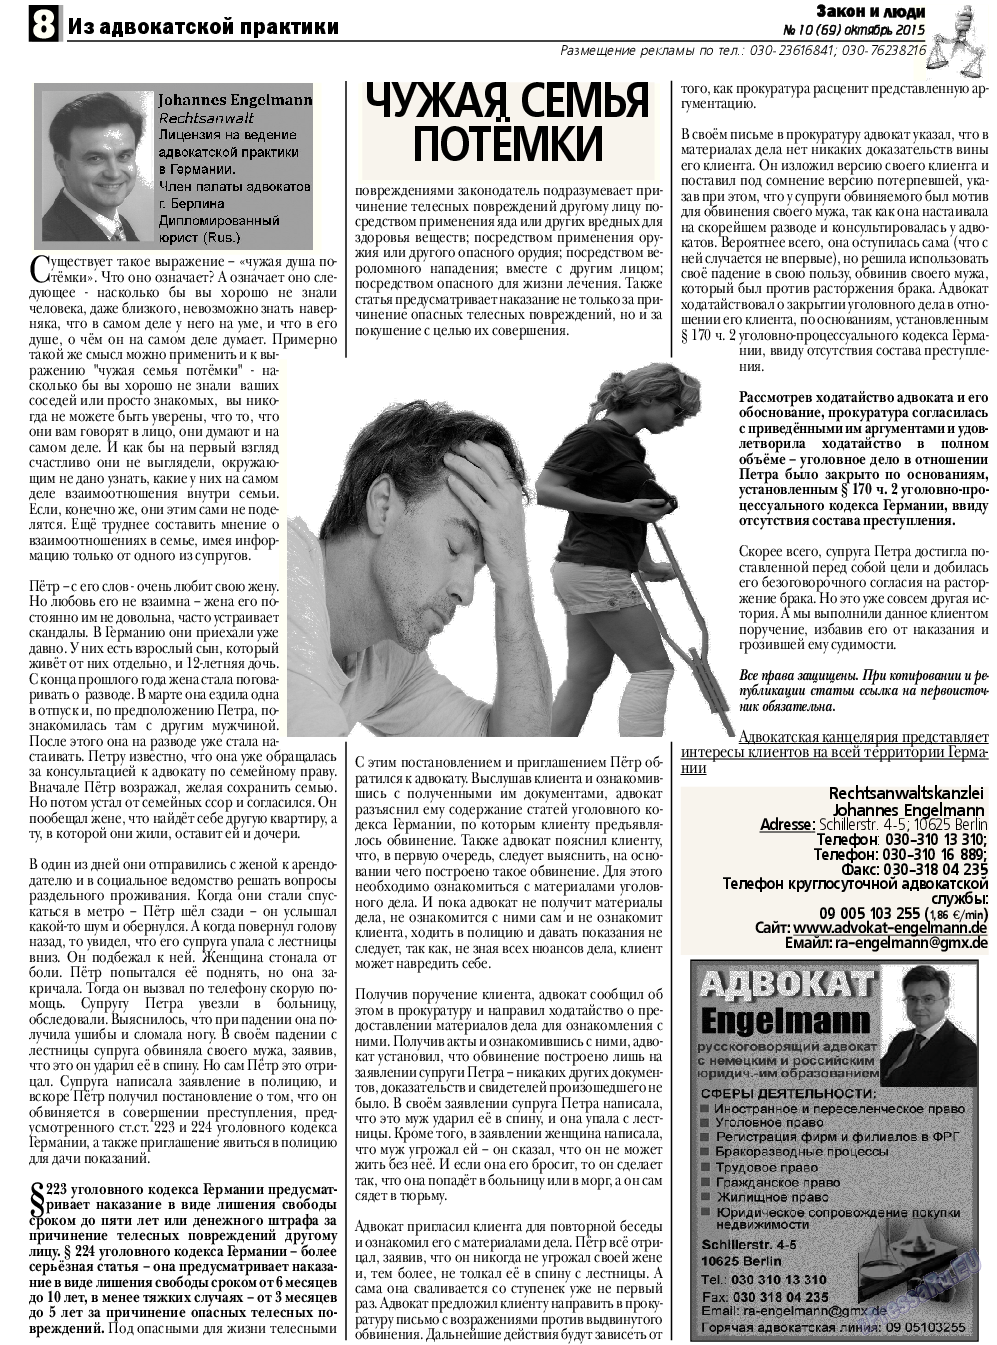 Закон и люди, газета. 2015 №10 стр.8